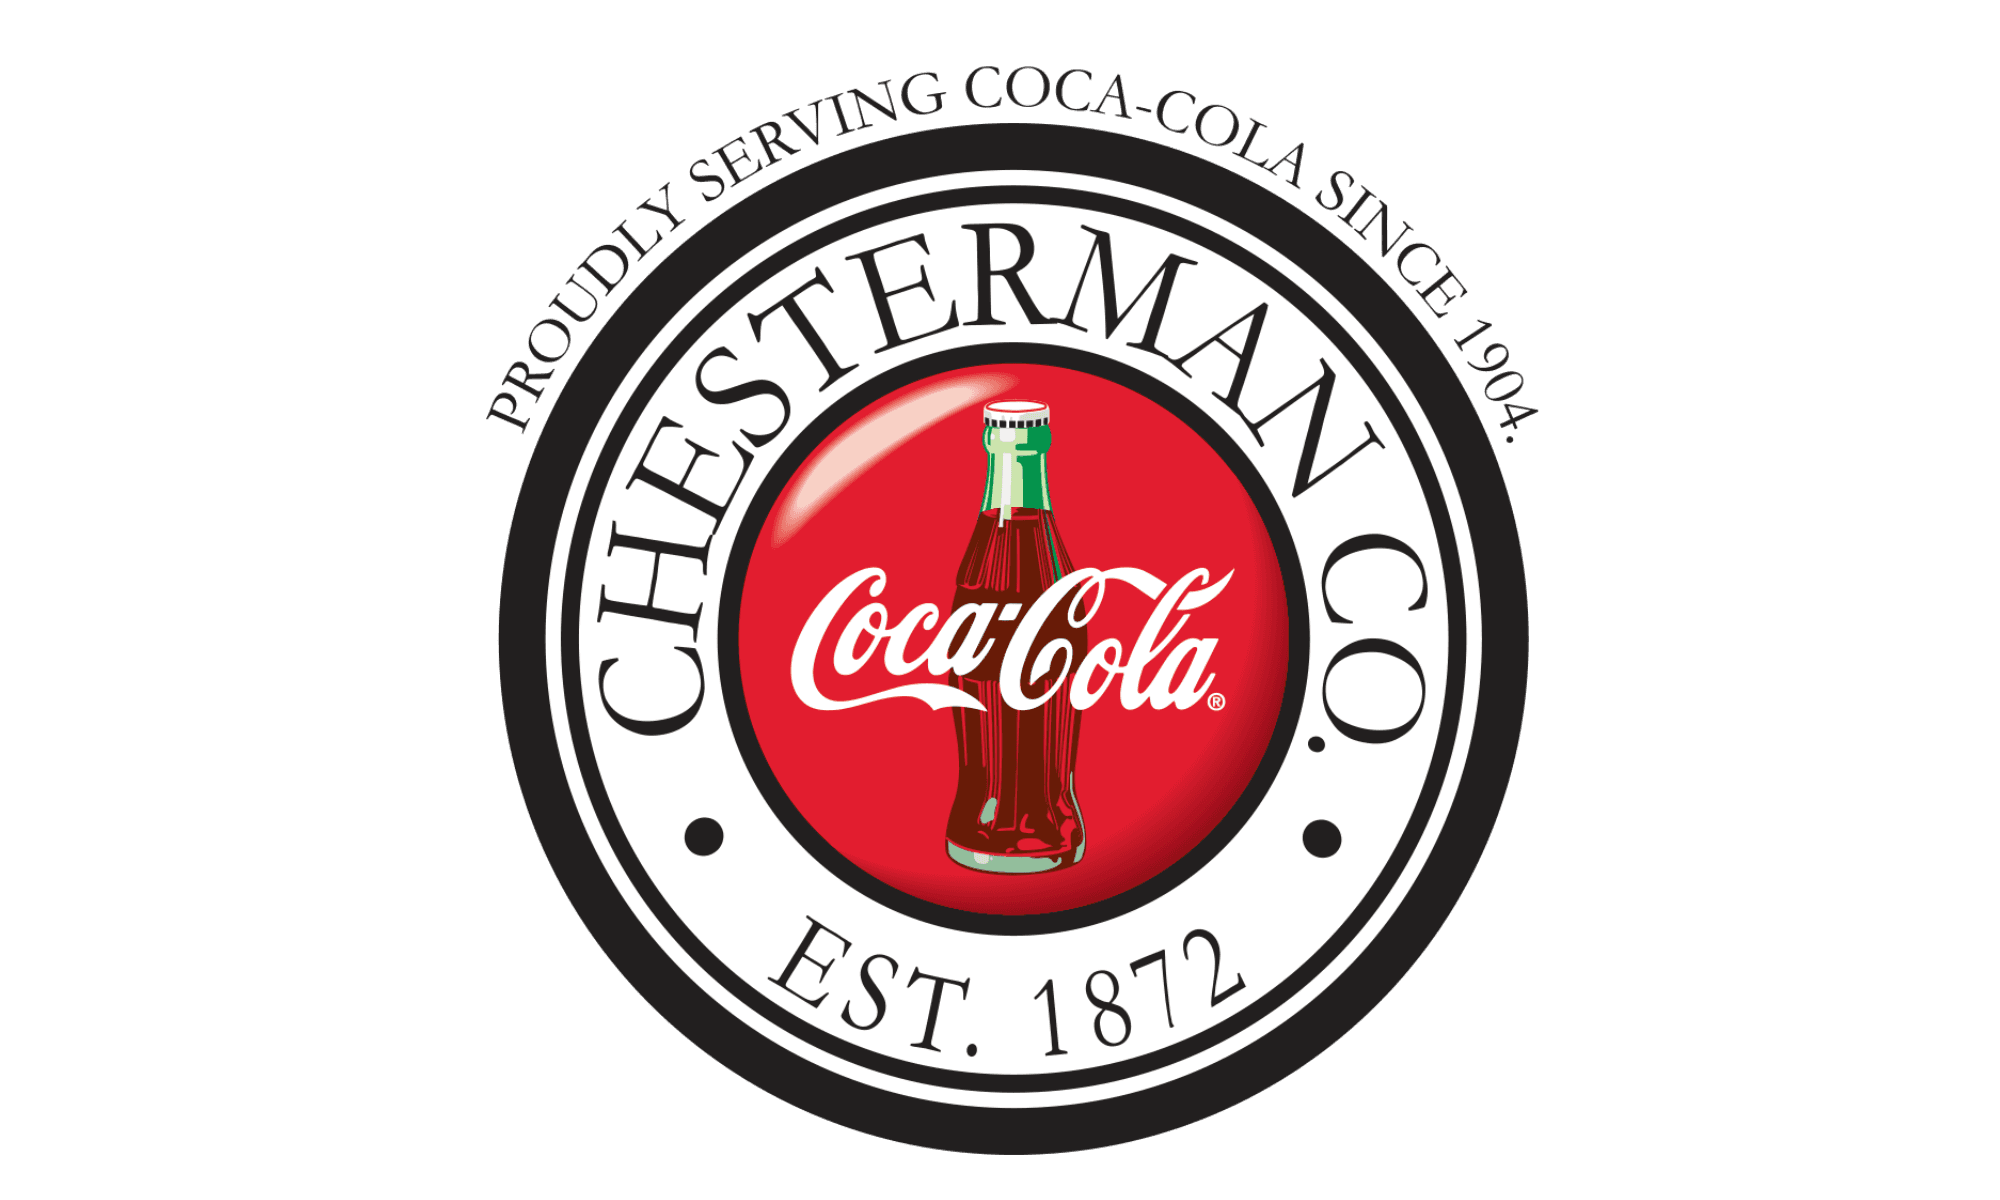 Coca-Cola Chesterman